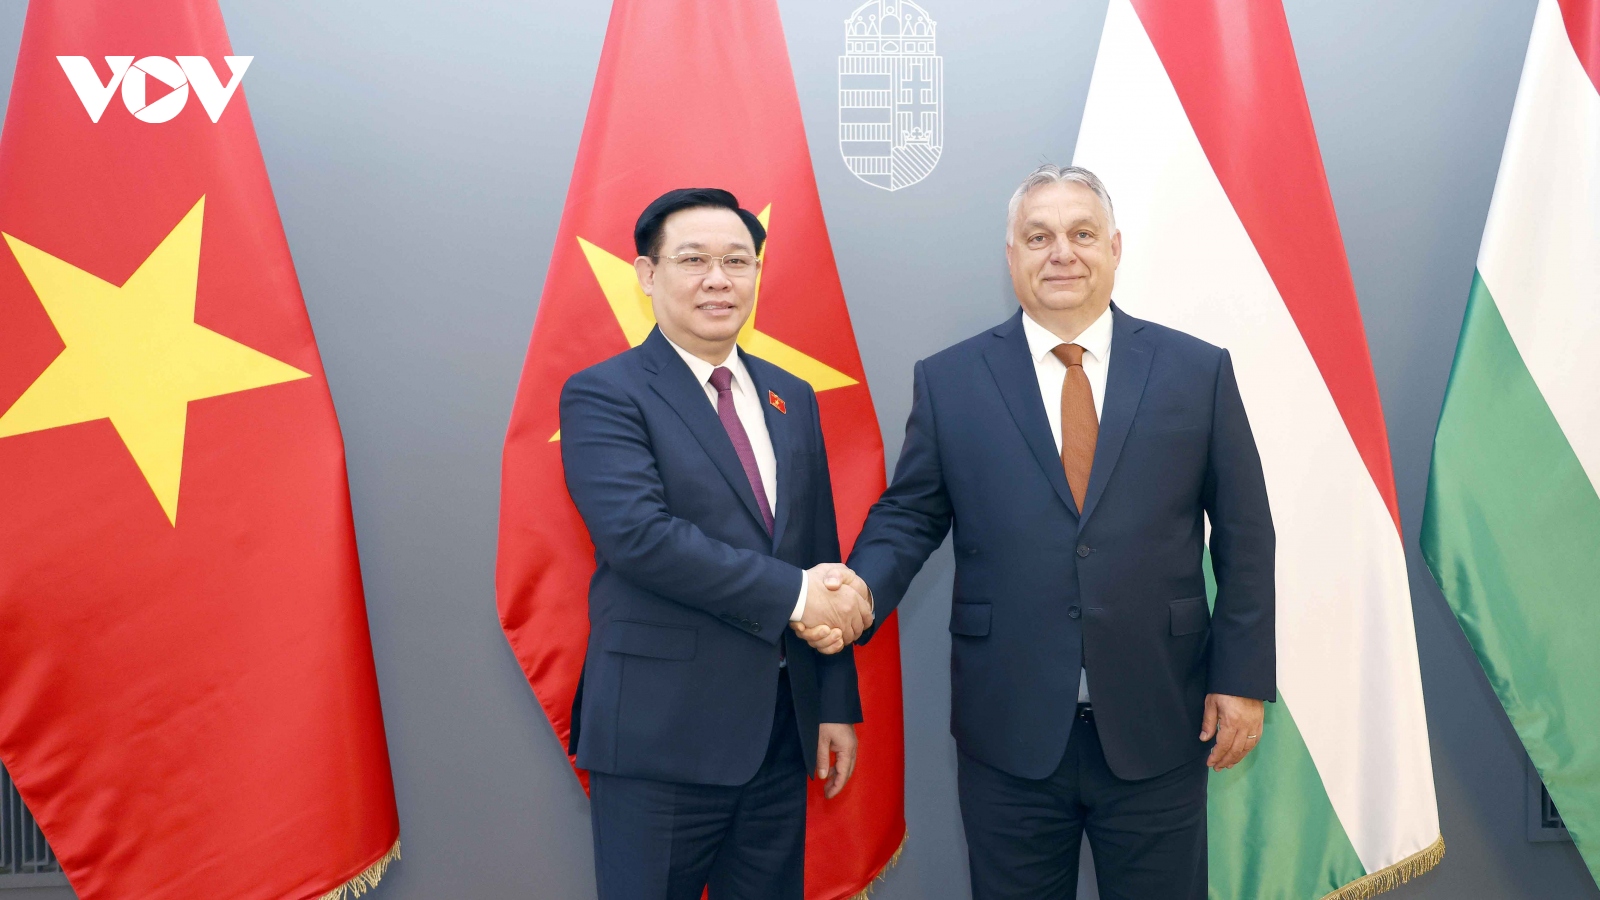 Việt Nam mong muốn đưa quan hệ đối tác với Hungary đi vào chiều sâu, hiệu quả